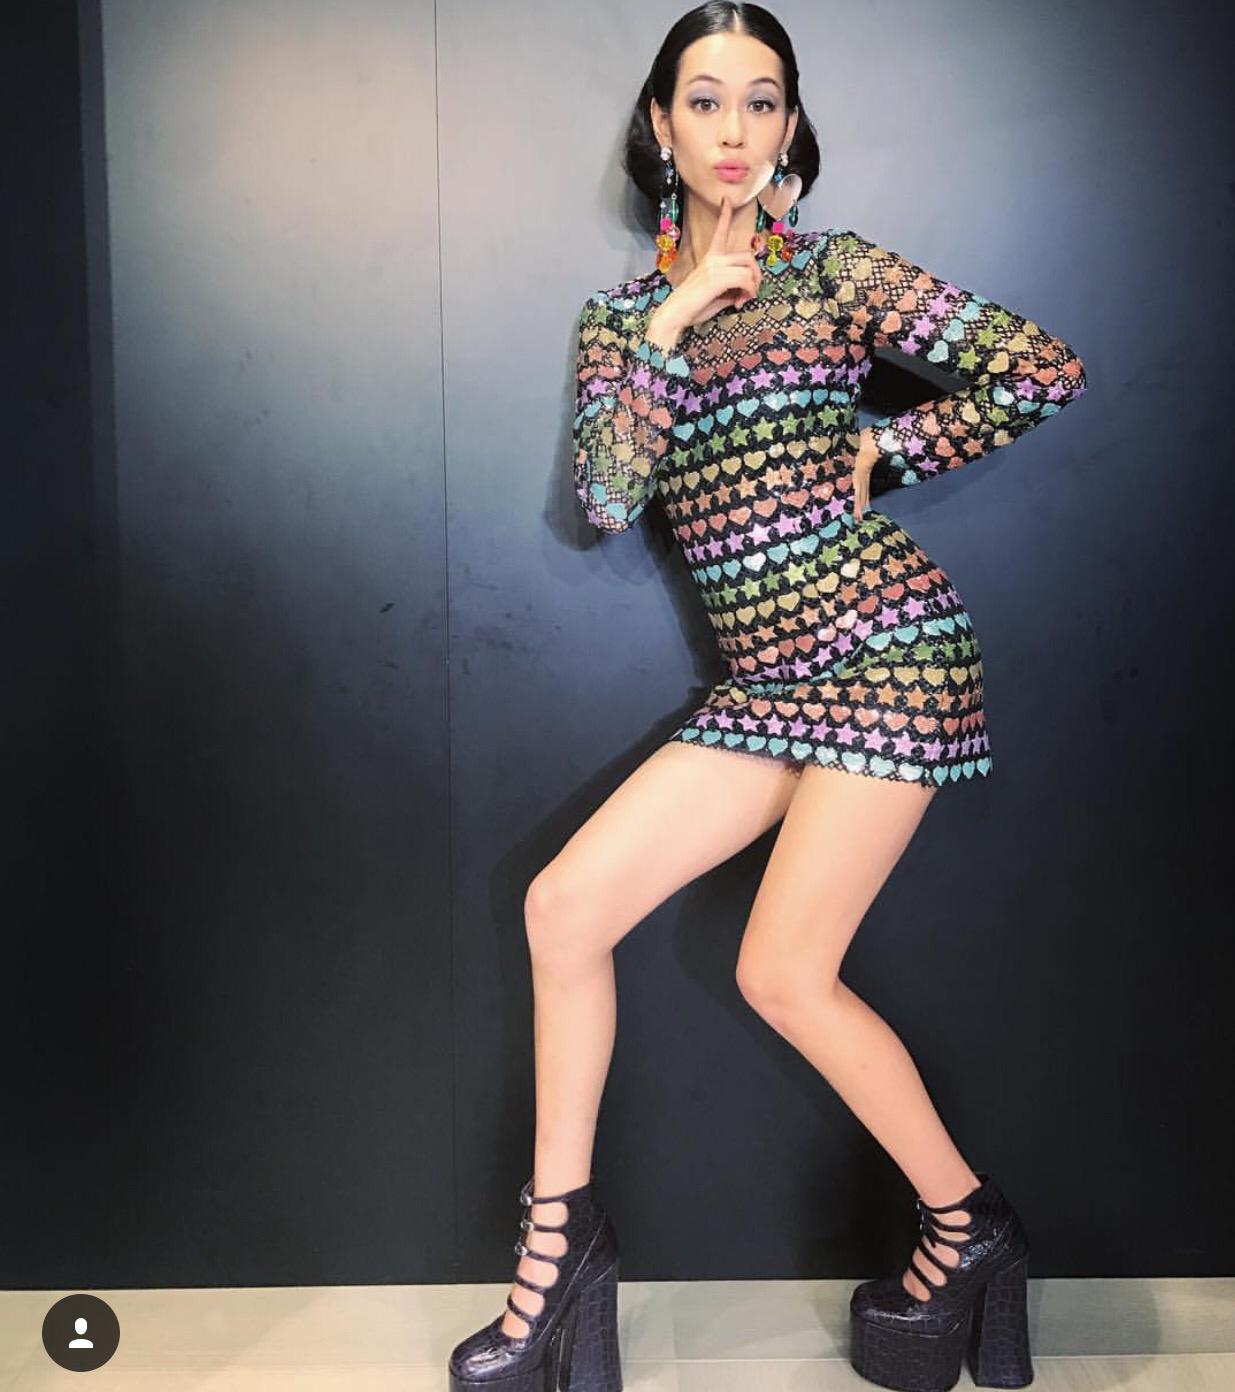 Kiko Mizuhara, Nana Komatsu or Sulli? – Fashion Style Princess